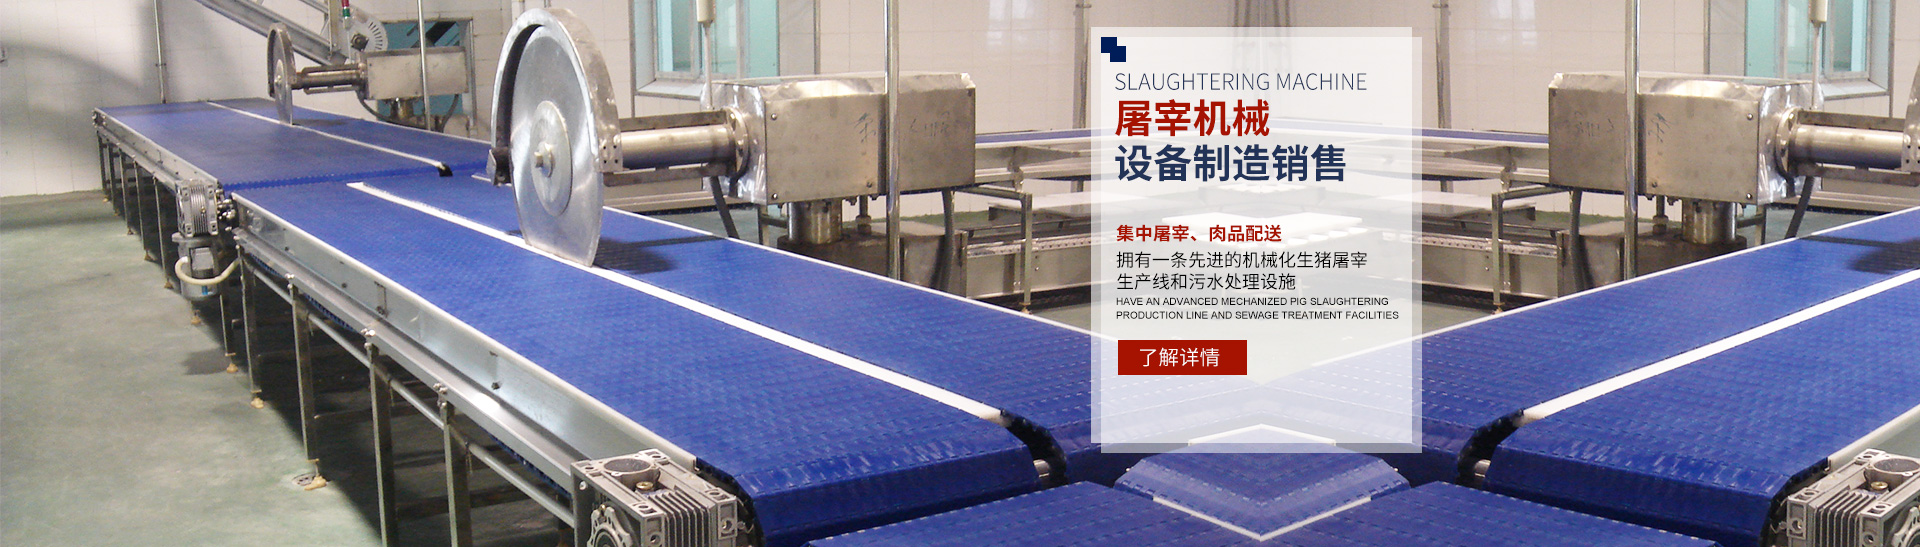 24体育网平台_湖南卧式放血输送机|不锈钢烫毛池销售